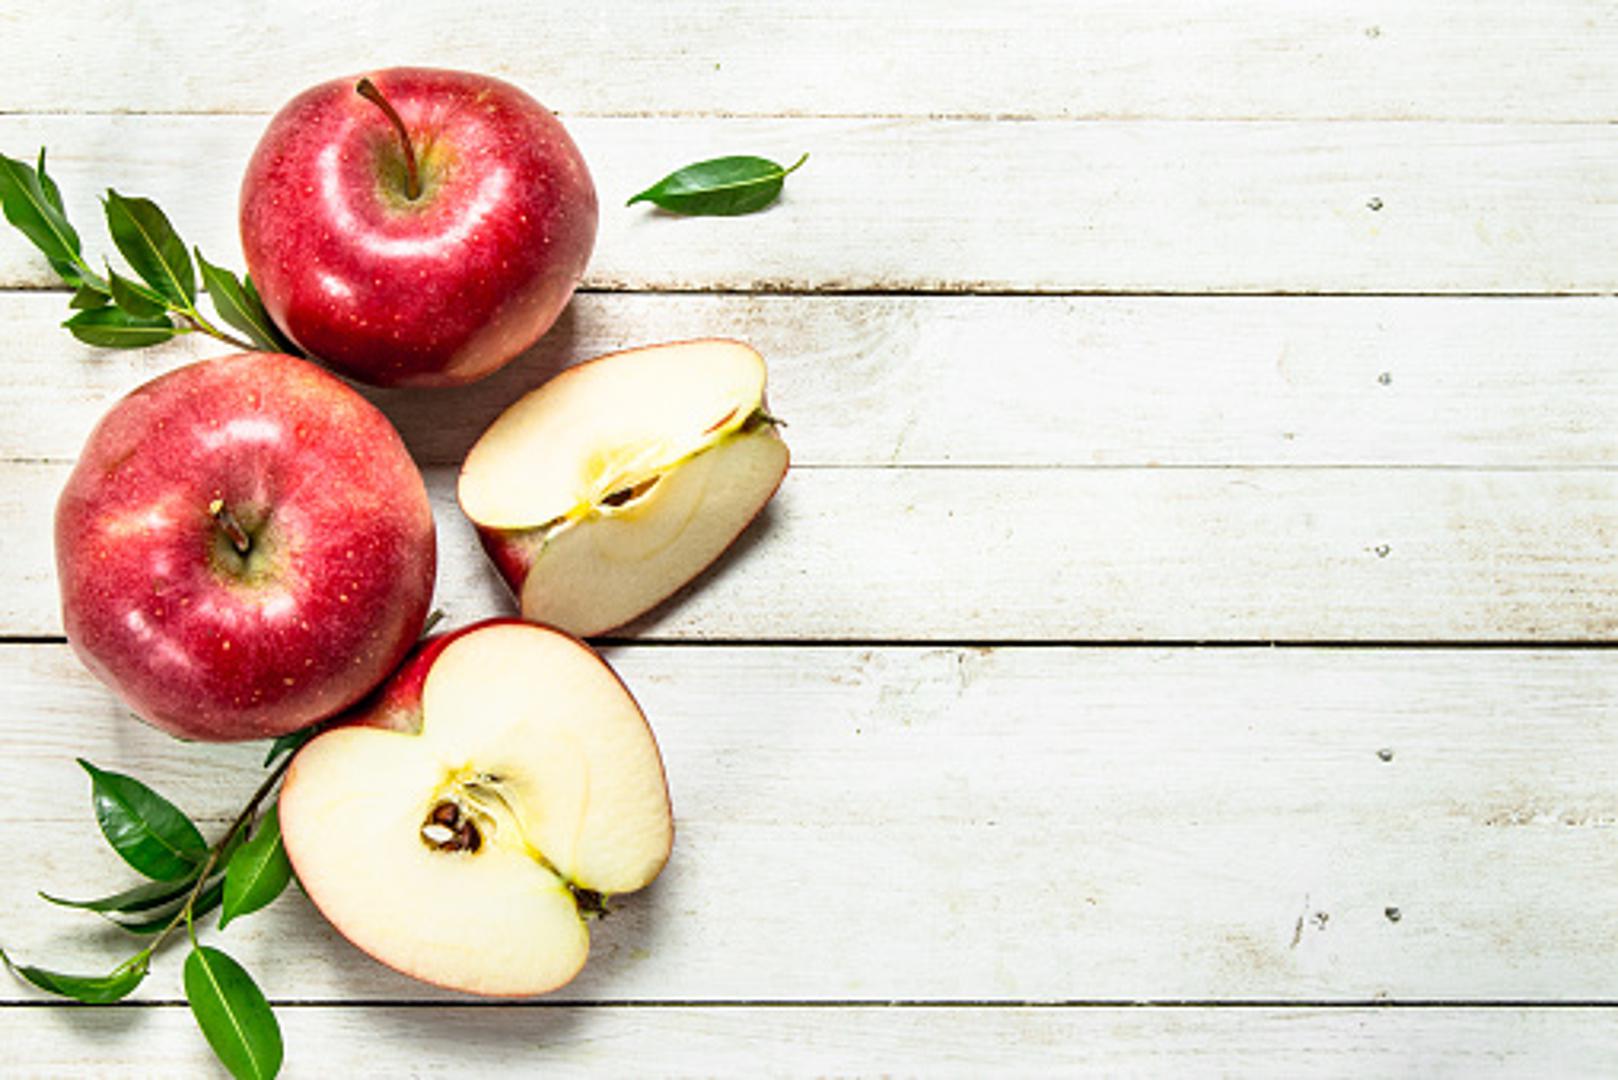 Protiv slobodnih radikala - Jabuke obiluju flavonoidima i fitokemikalijama, snažnim antioksidantima koji pomažu u borbi protiv slobodnih radikala koji mogu uzrokovati oštećenje stanica. 